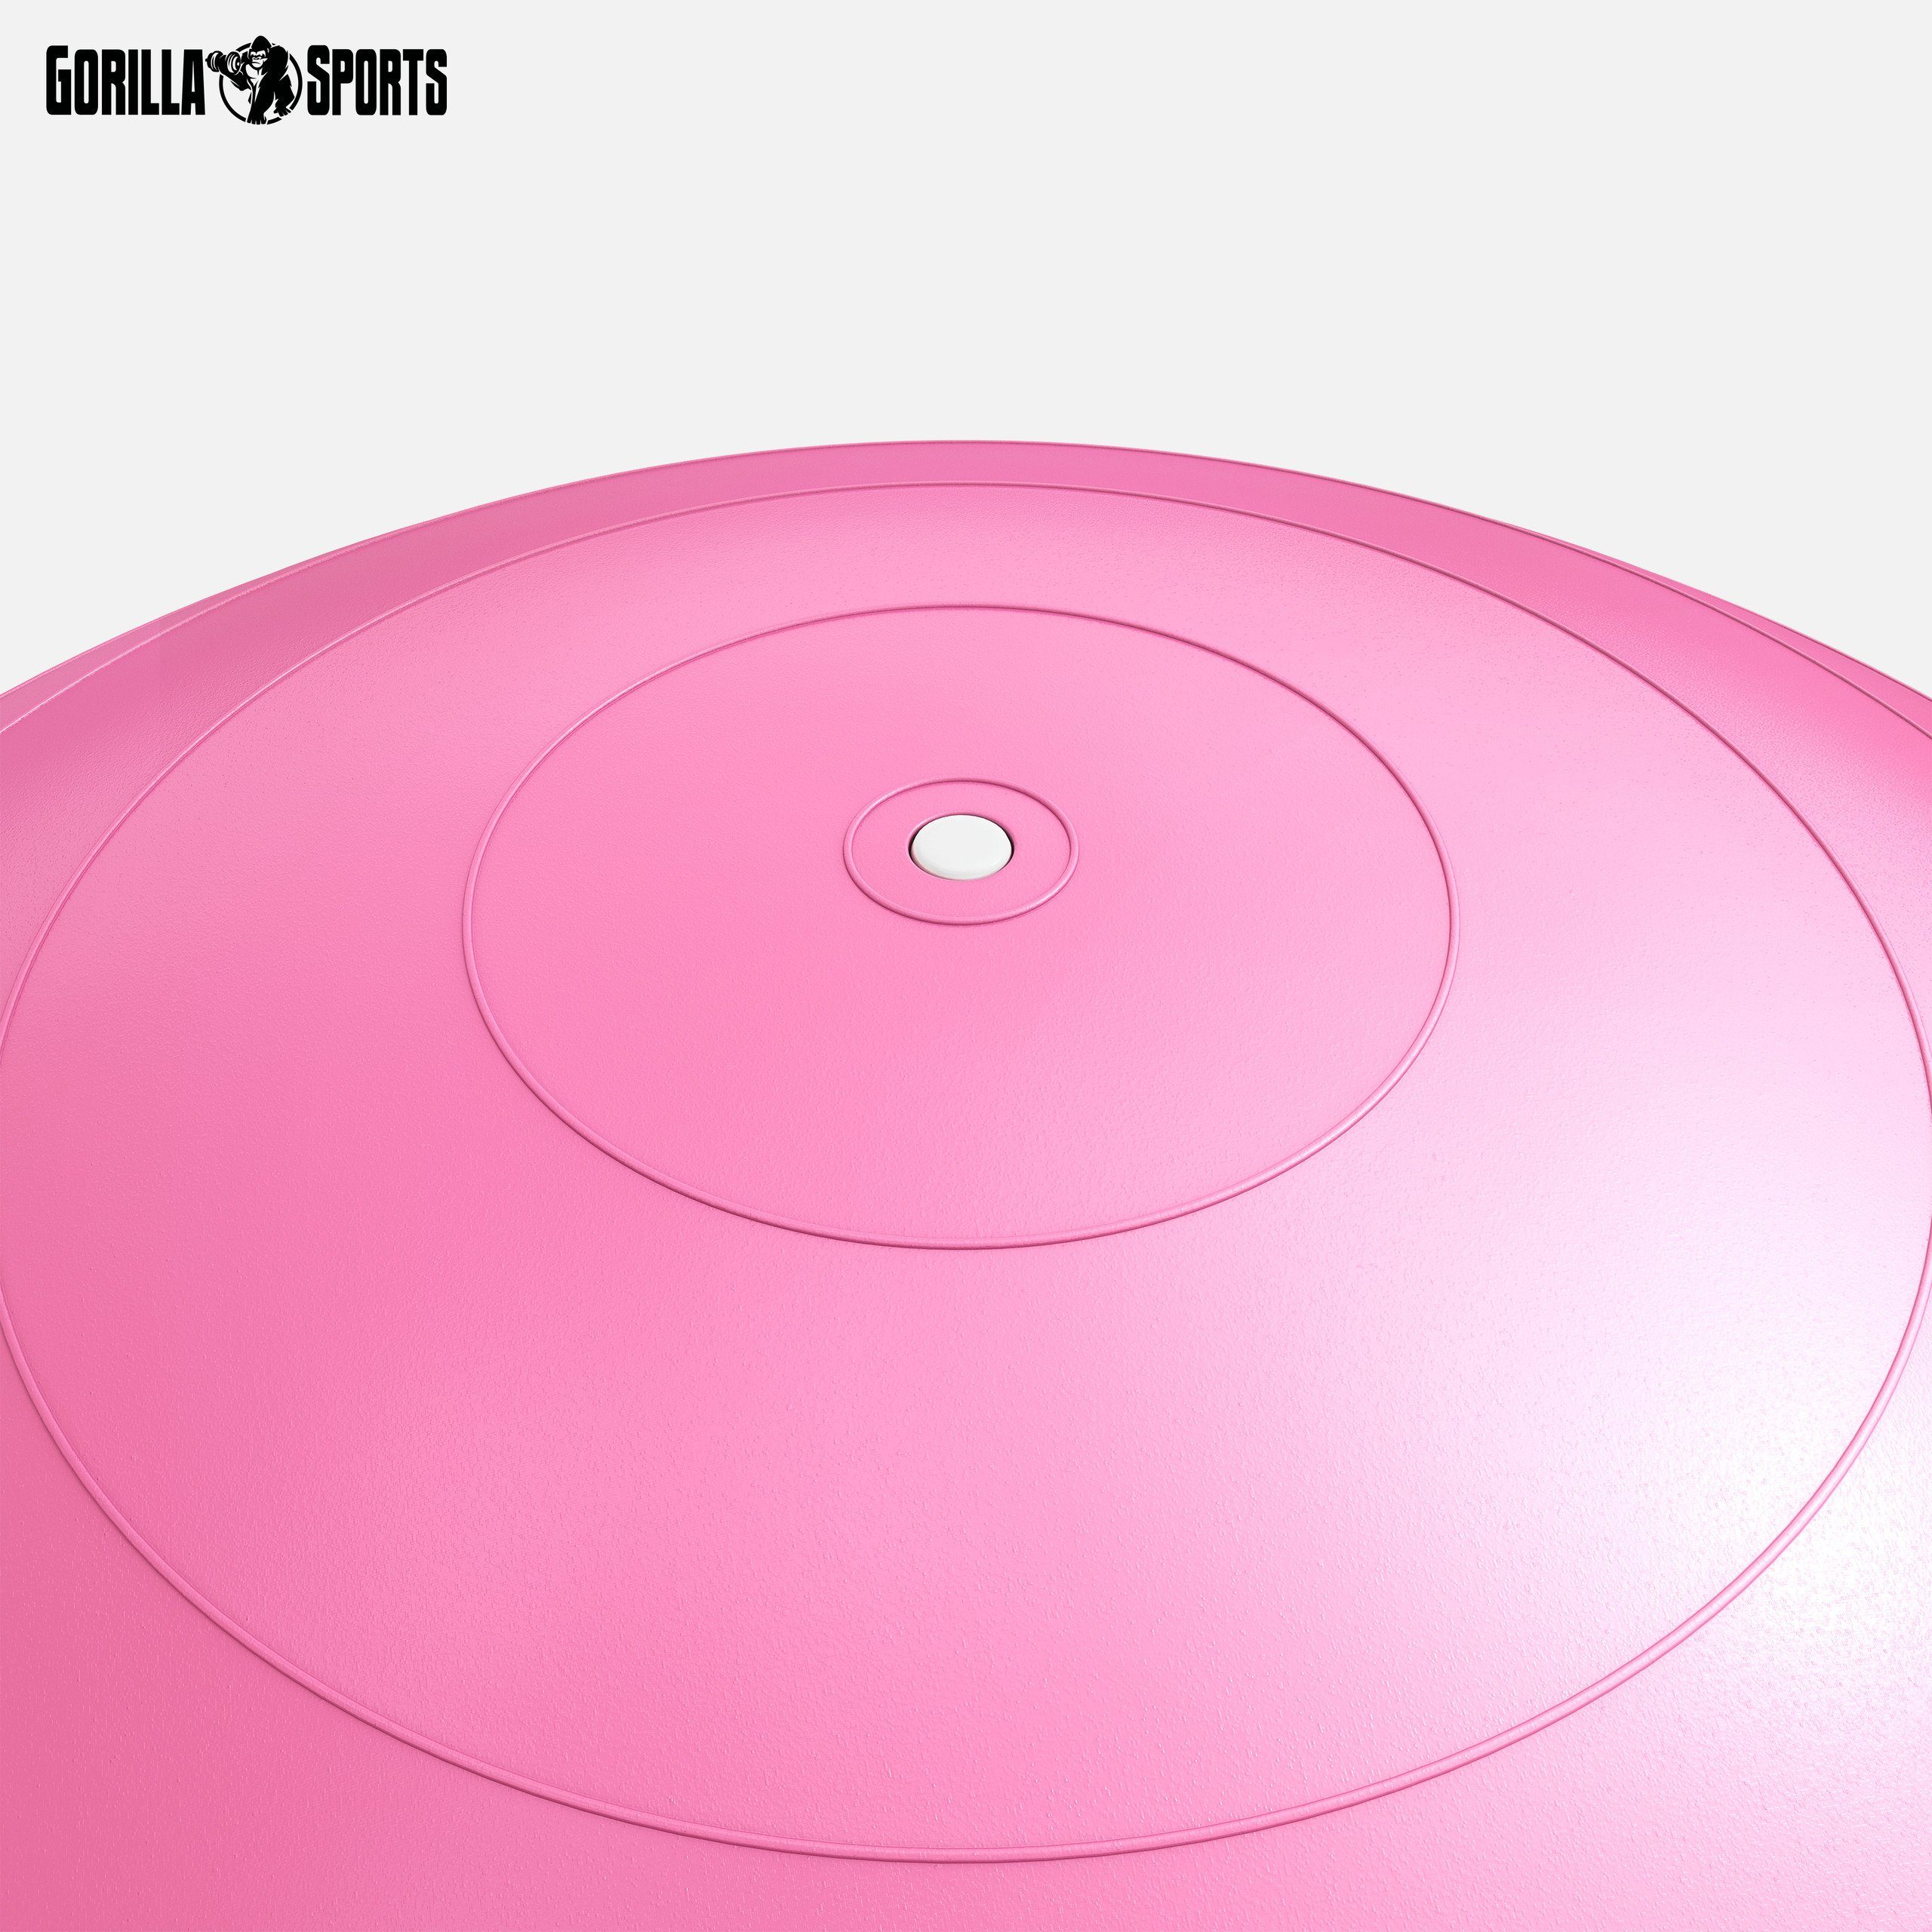 -Fitnessball GORILLA Anti-Burst, 55cm/65cm/75cm, 500kg Gymnastikball Farbwahl Pink Belastbar, SPORTS bis